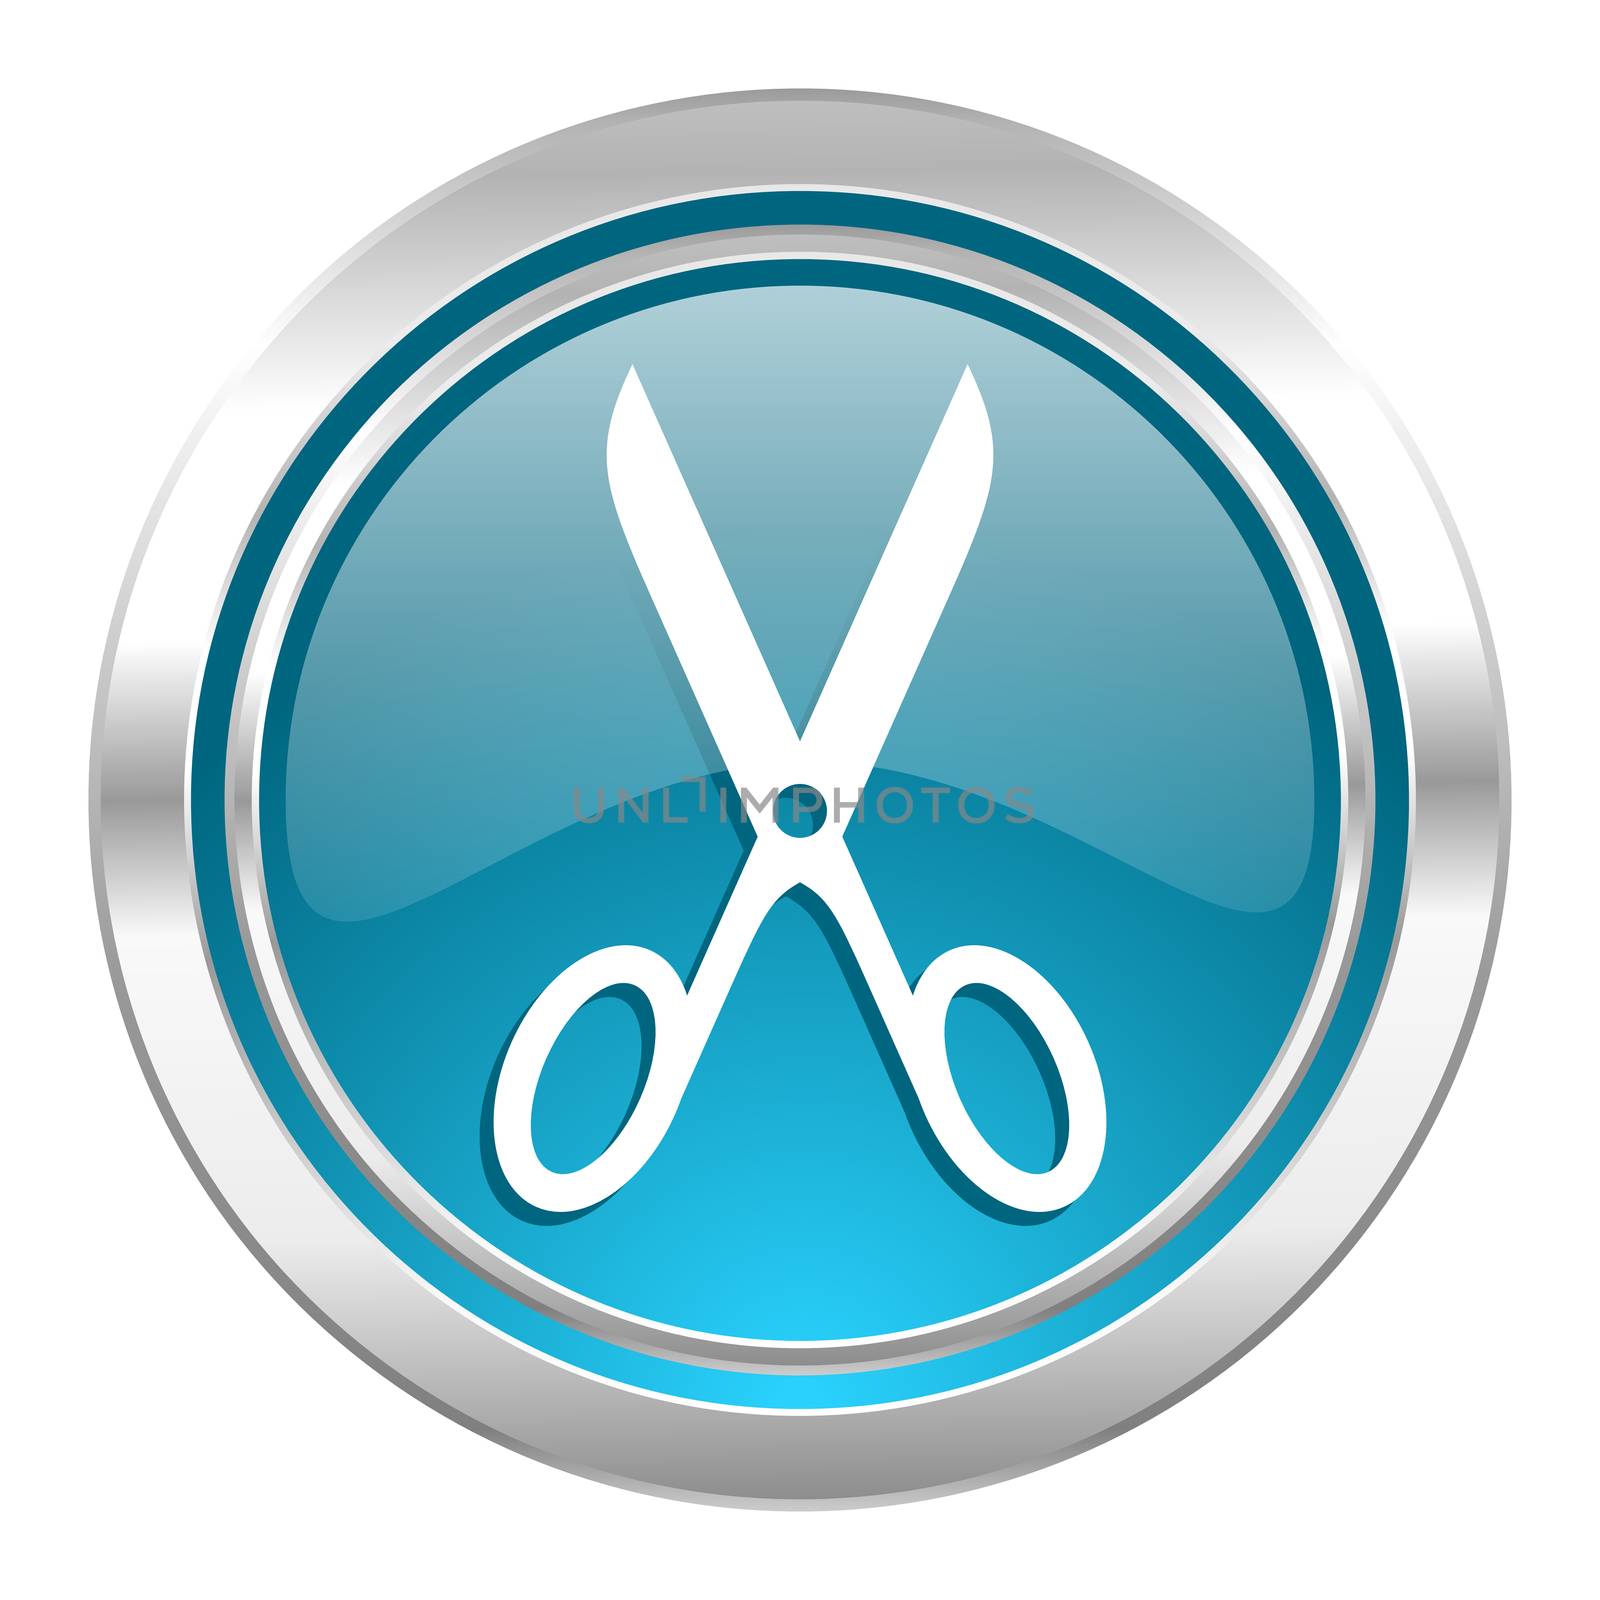 scissors icon, cut sign